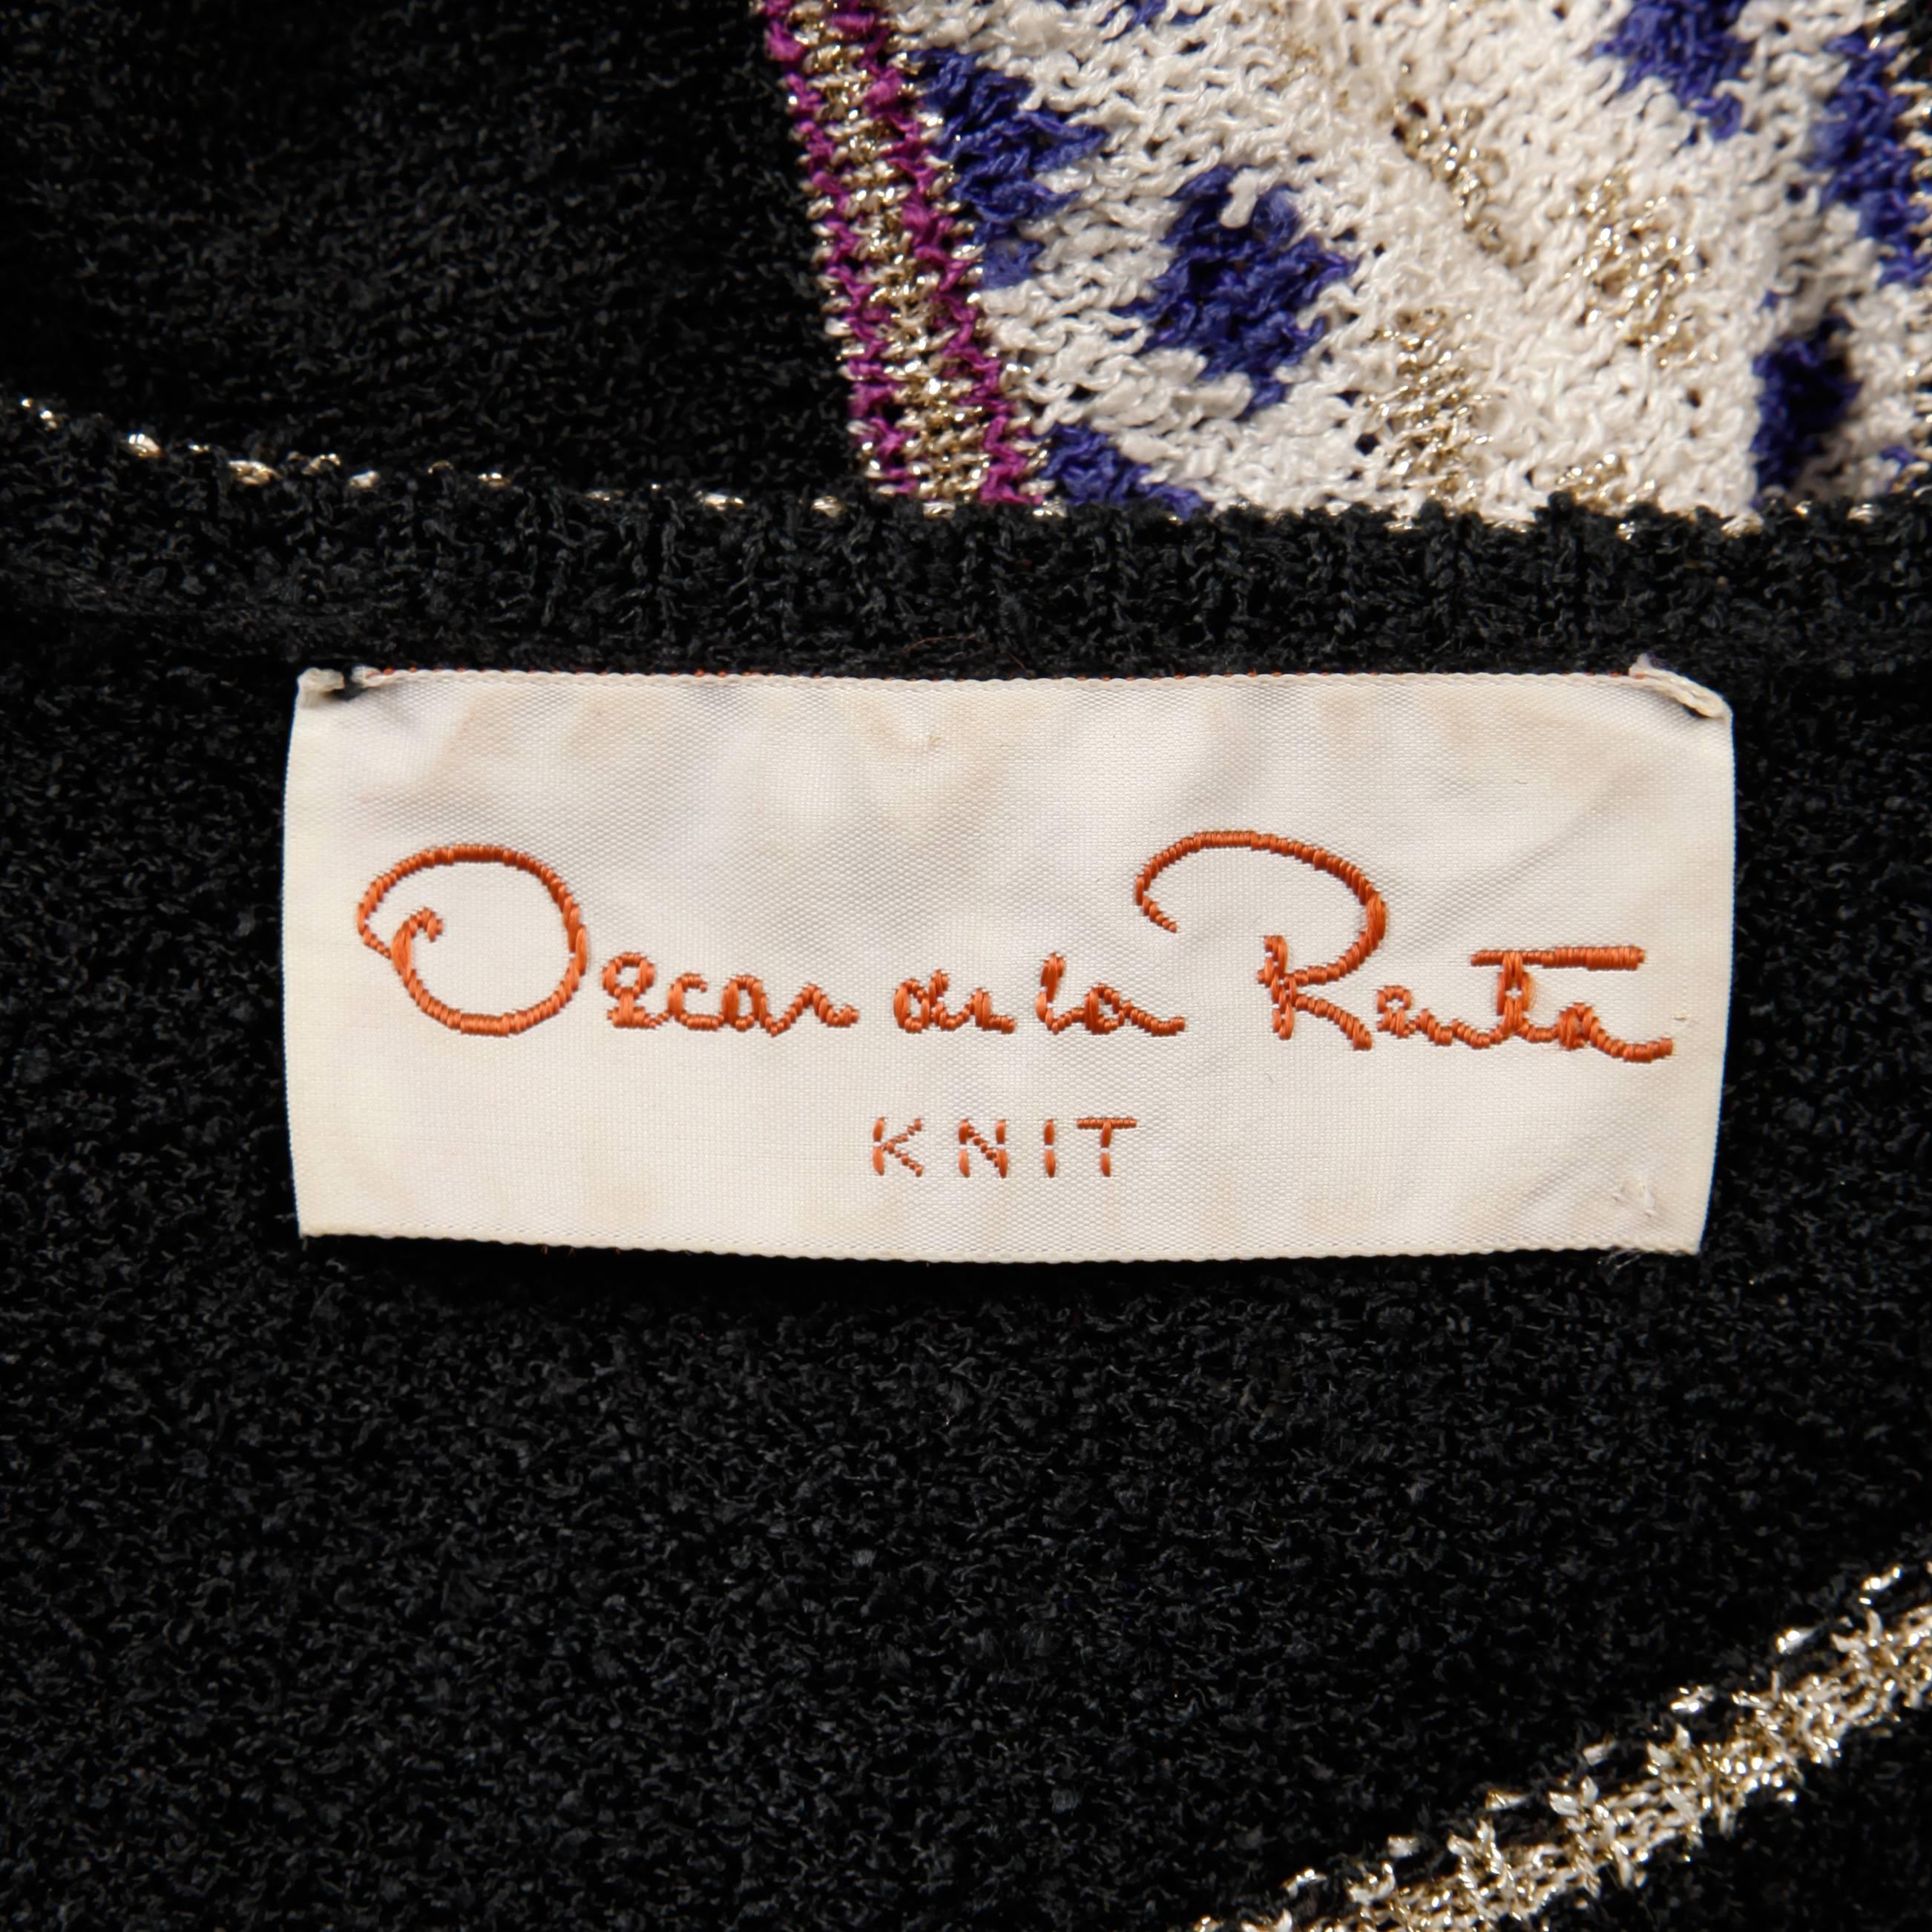 Erstaunlich Vintage 1970er Jahre stricken Pullover Top, Rock und stricken Krawatte Gürtel von Oscar de la Renta. Das Oberteil ist ungefüttert und hat keinen Verschluss (kann über den Kopf gezogen werden). Die Oberweite beträgt 33-36